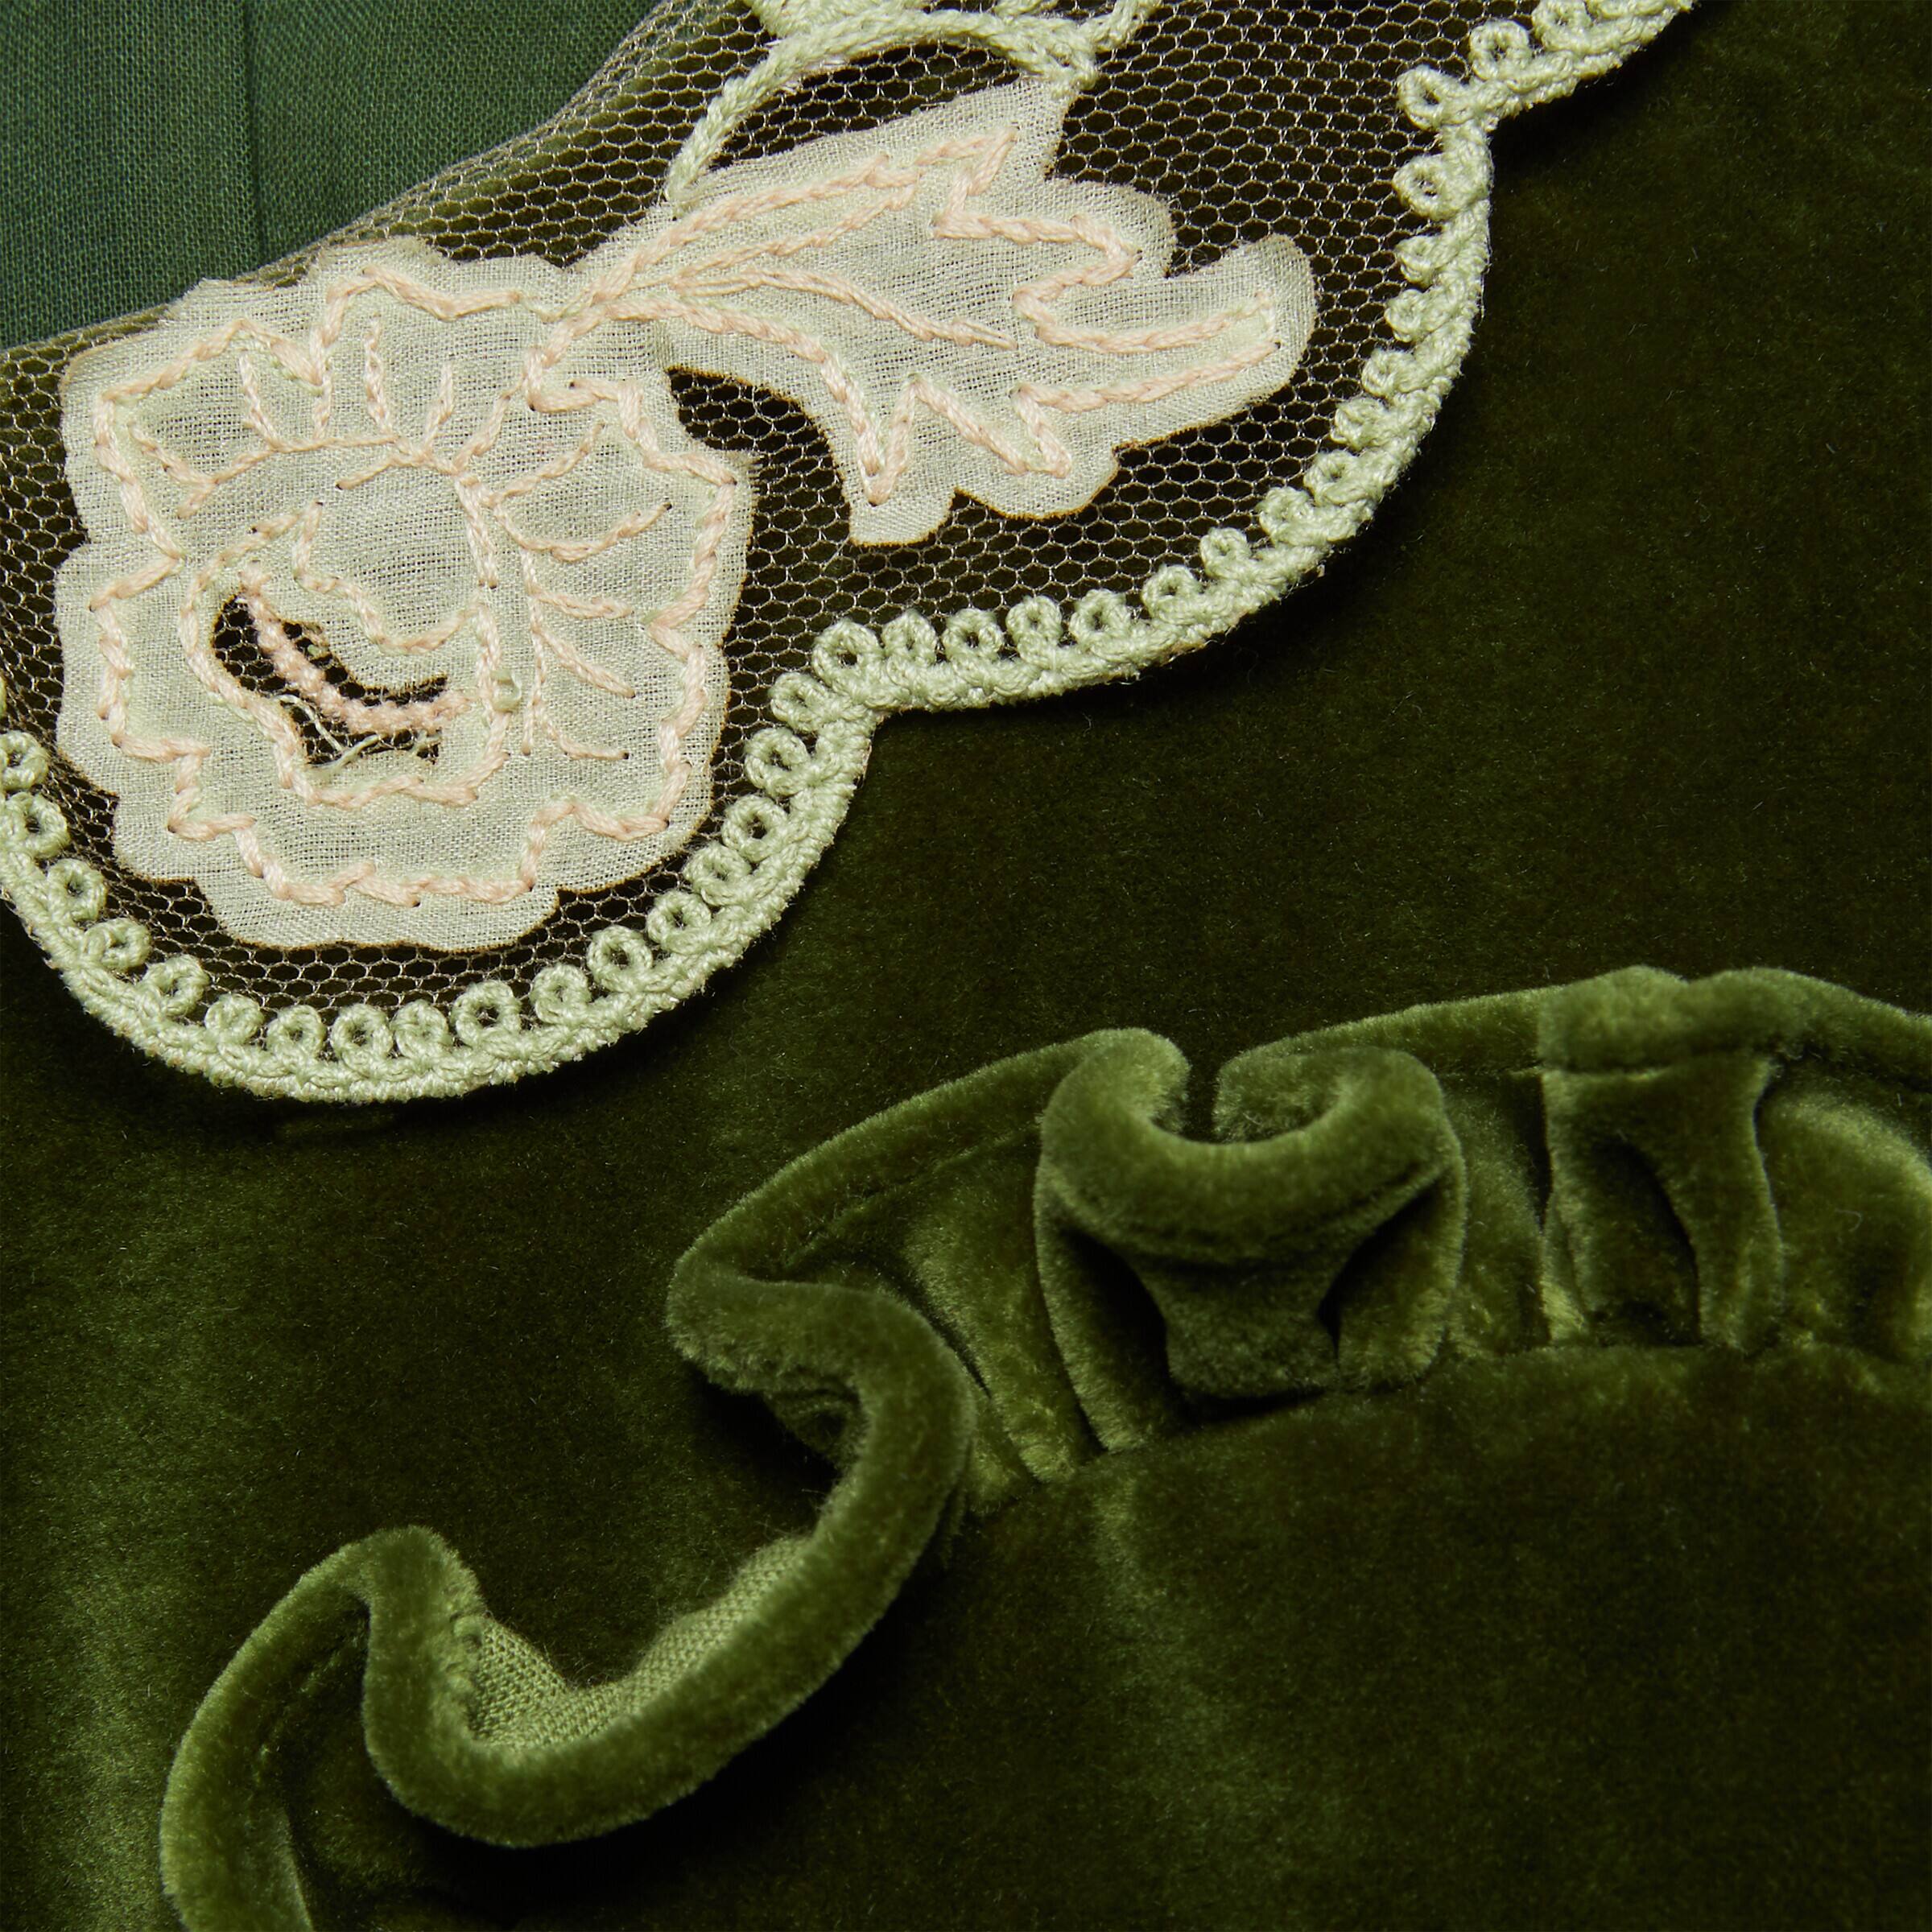 Girls Green Embroidered Collar Velvet Dress